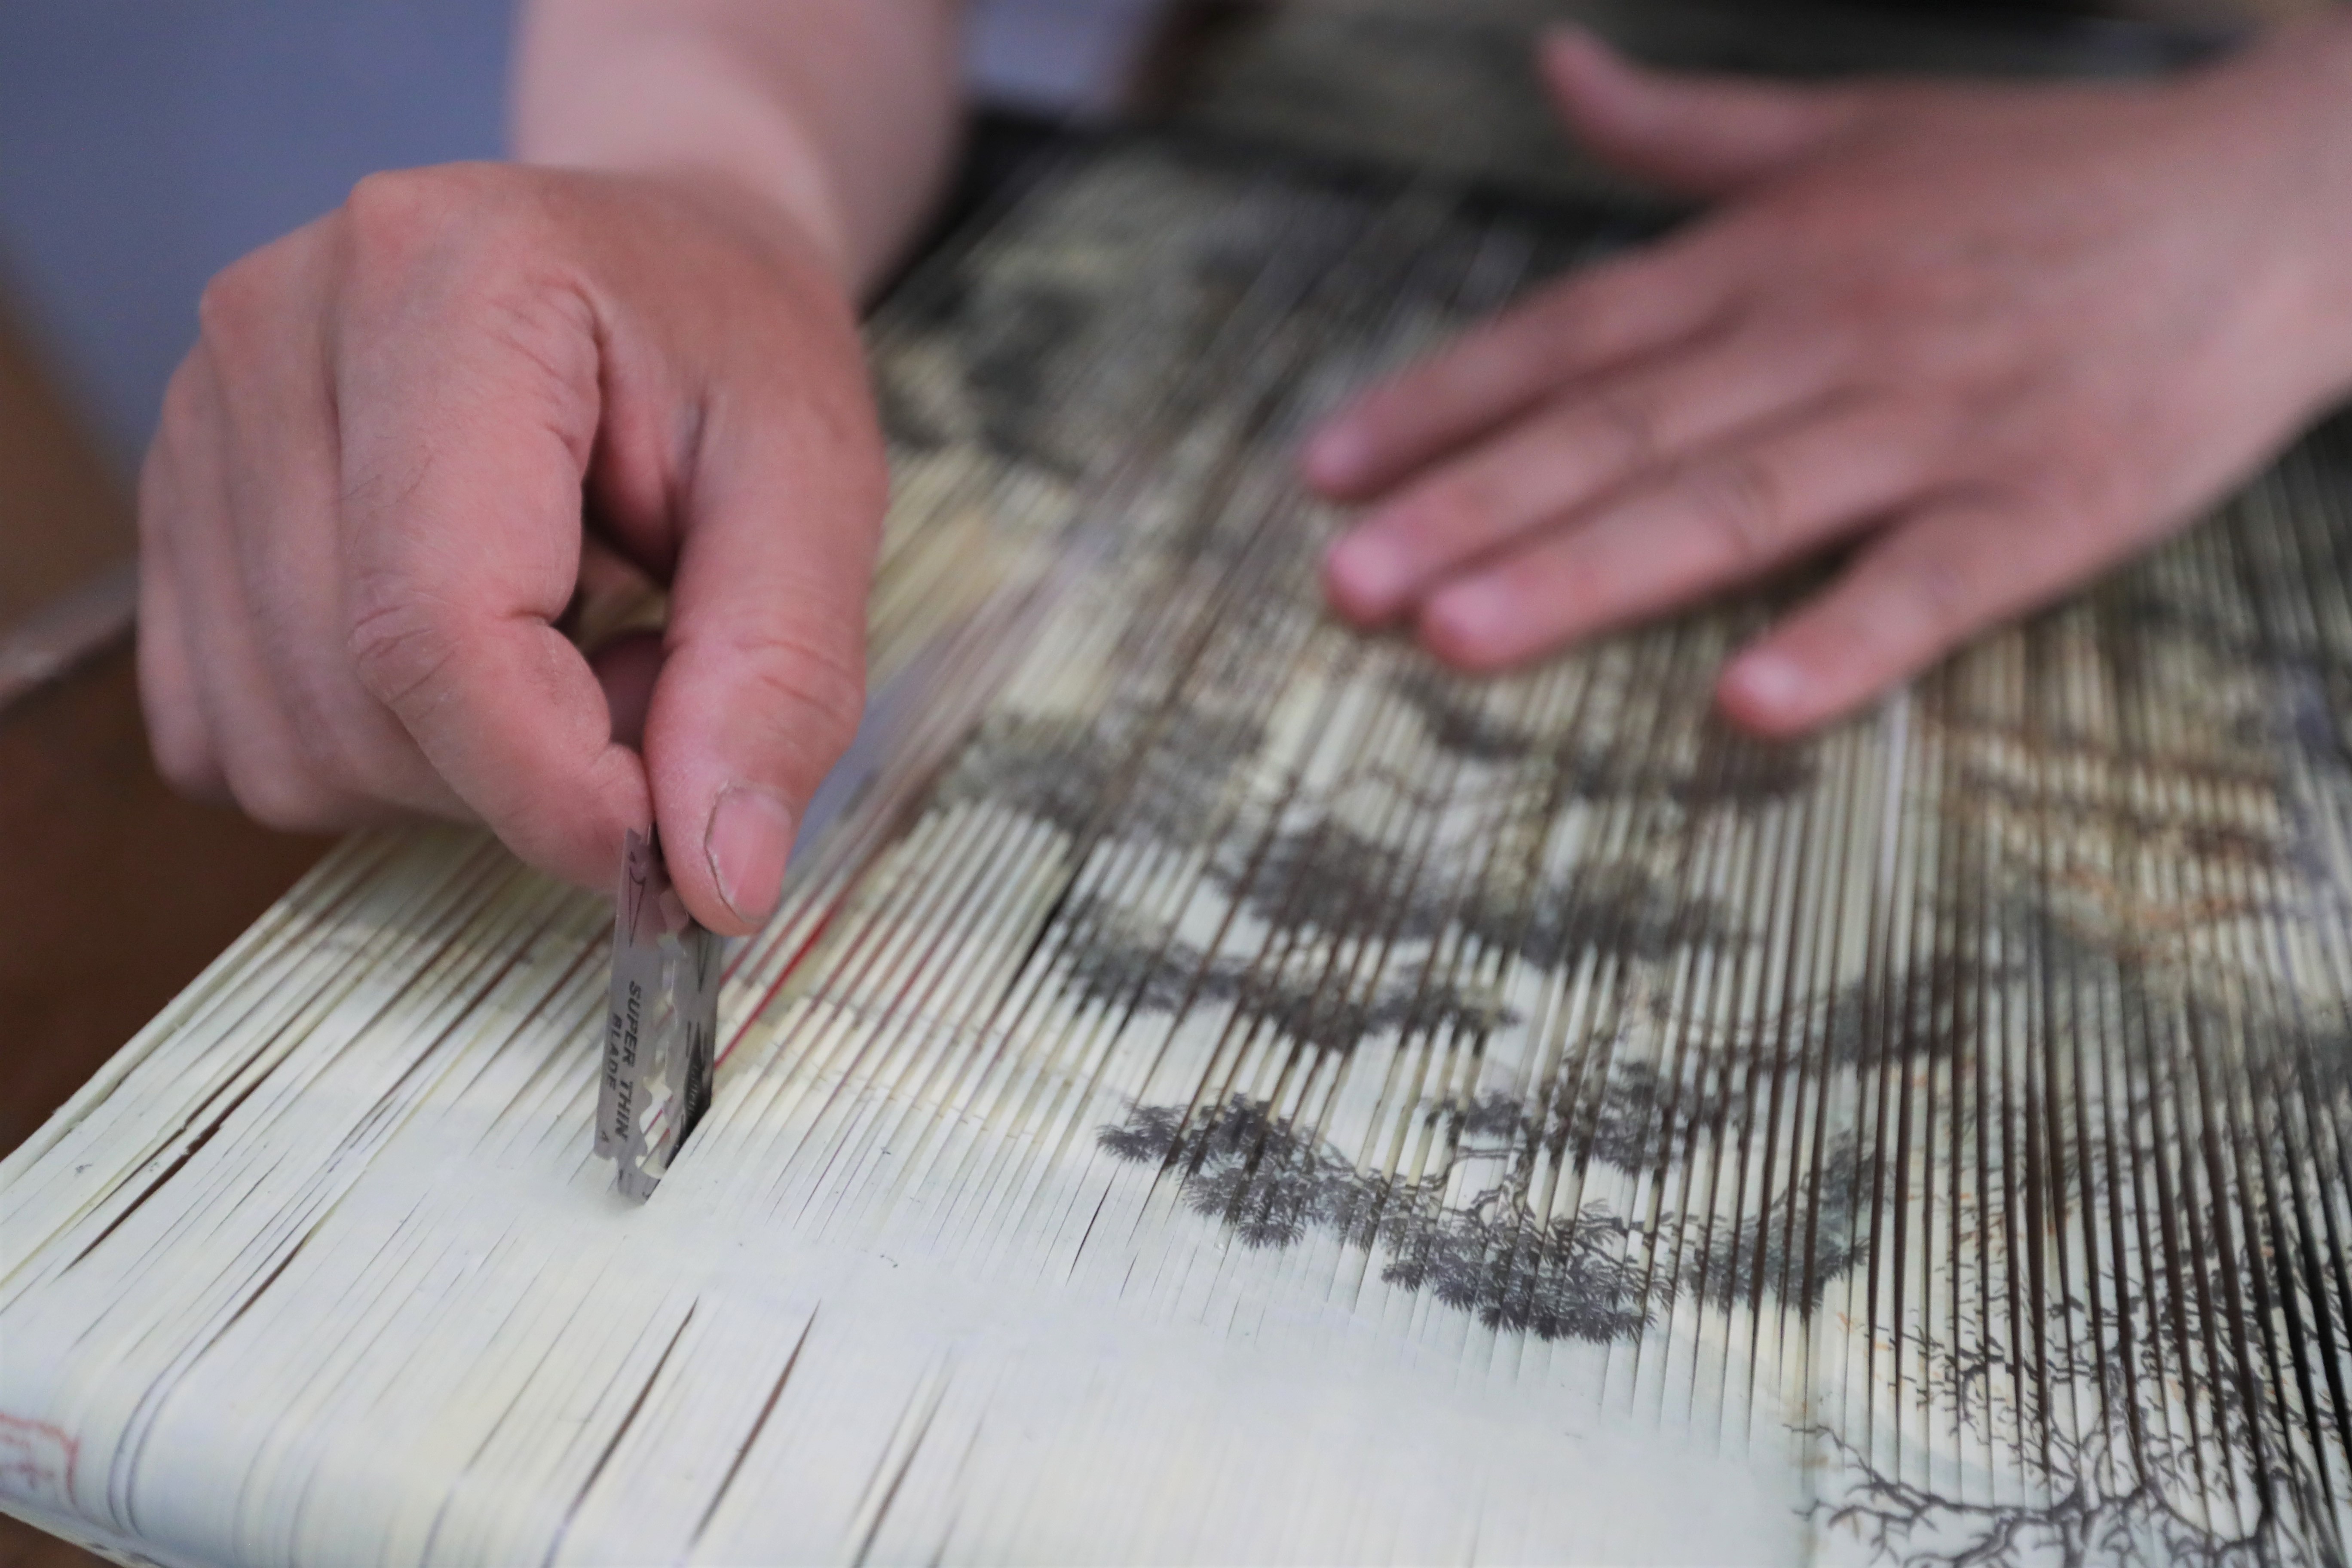 7月8日,在庄浪县泥金纸织画传习所,魏巍在裁切国画,制作泥金纸织画的"